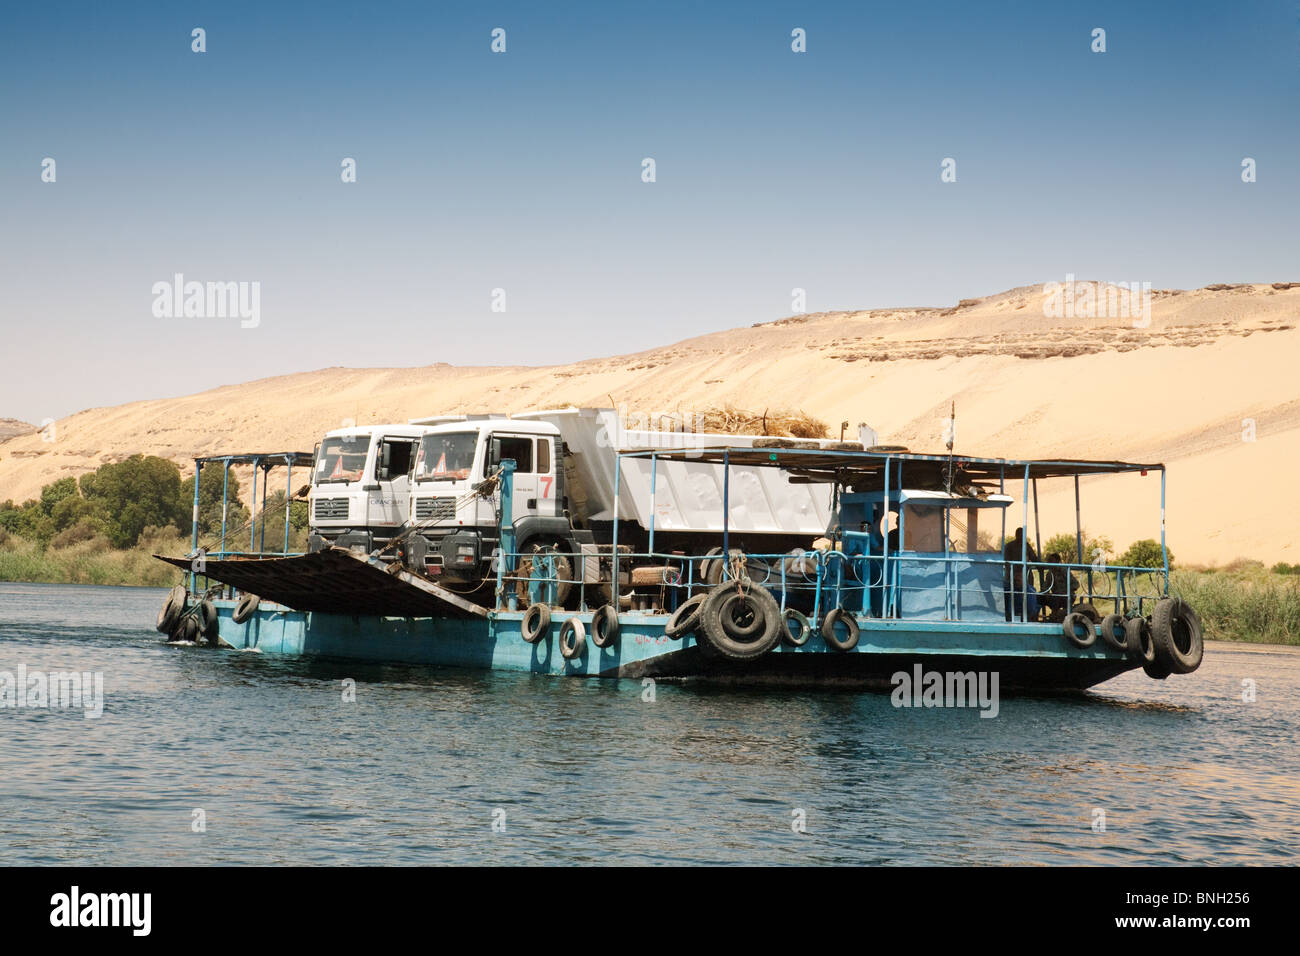 Un ferry transportant des camions sur le Nil à Assouan, en Haute-Egypte Afrique Banque D'Images